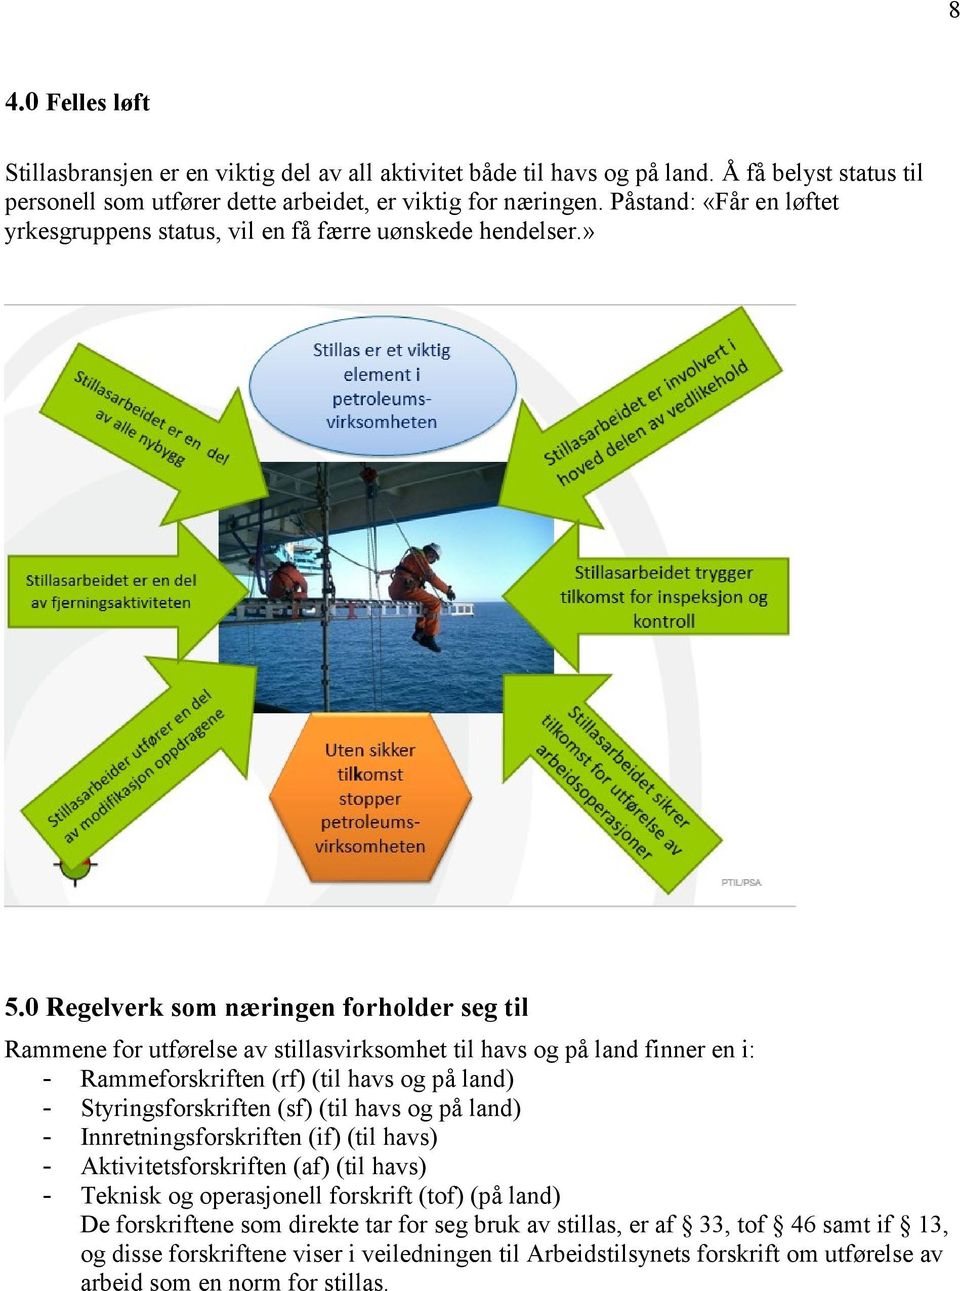 0 Regelverk som næringen forholder seg til Rammene for utførelse av stillasvirksomhet til havs og på land finner en i: - Rammeforskriften (rf) (til havs og på land) - Styringsforskriften (sf) (til